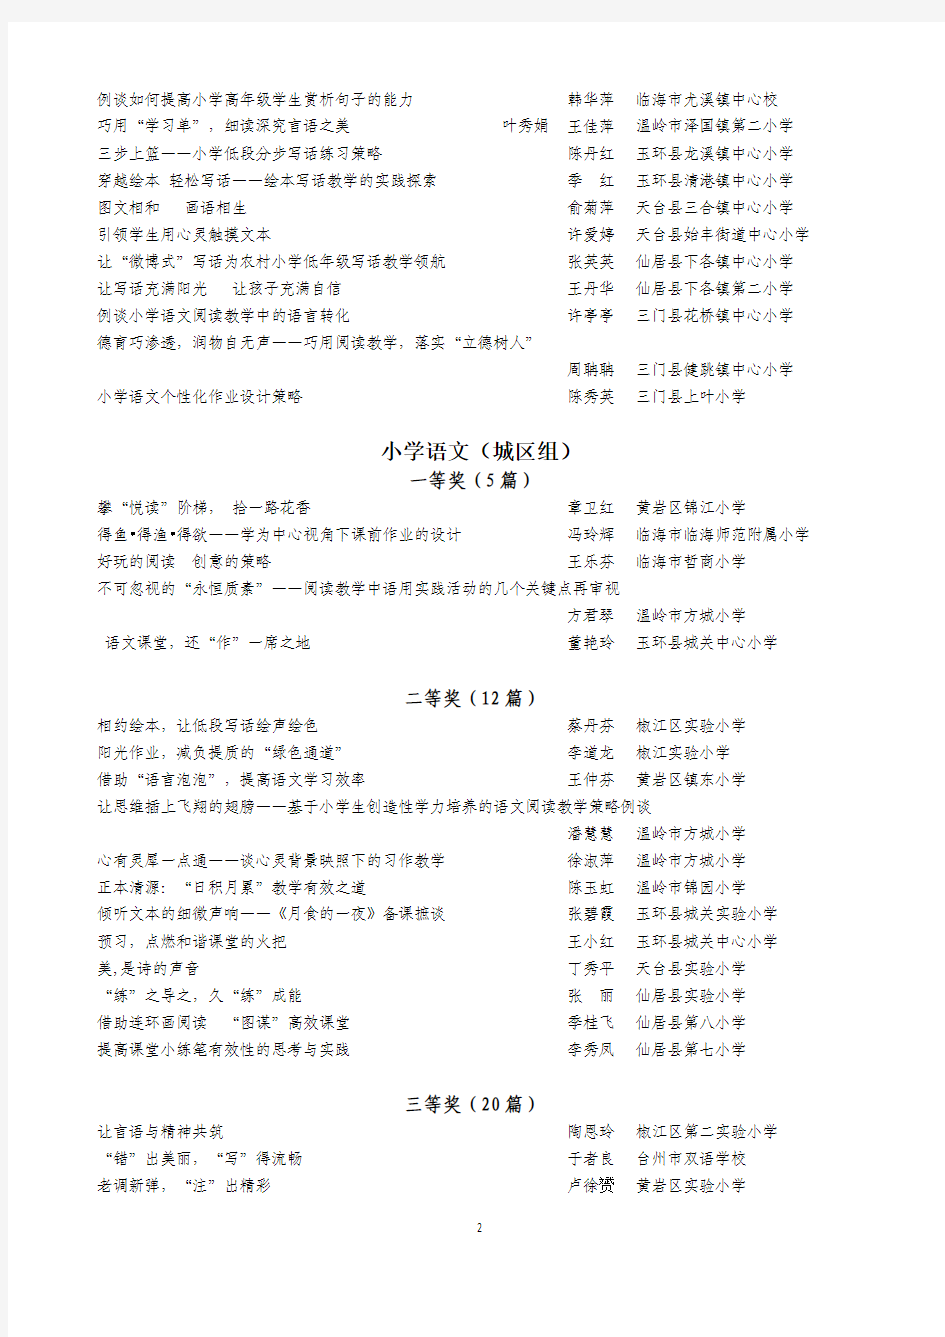 台州市2014年中小学教师论文评比获奖名单